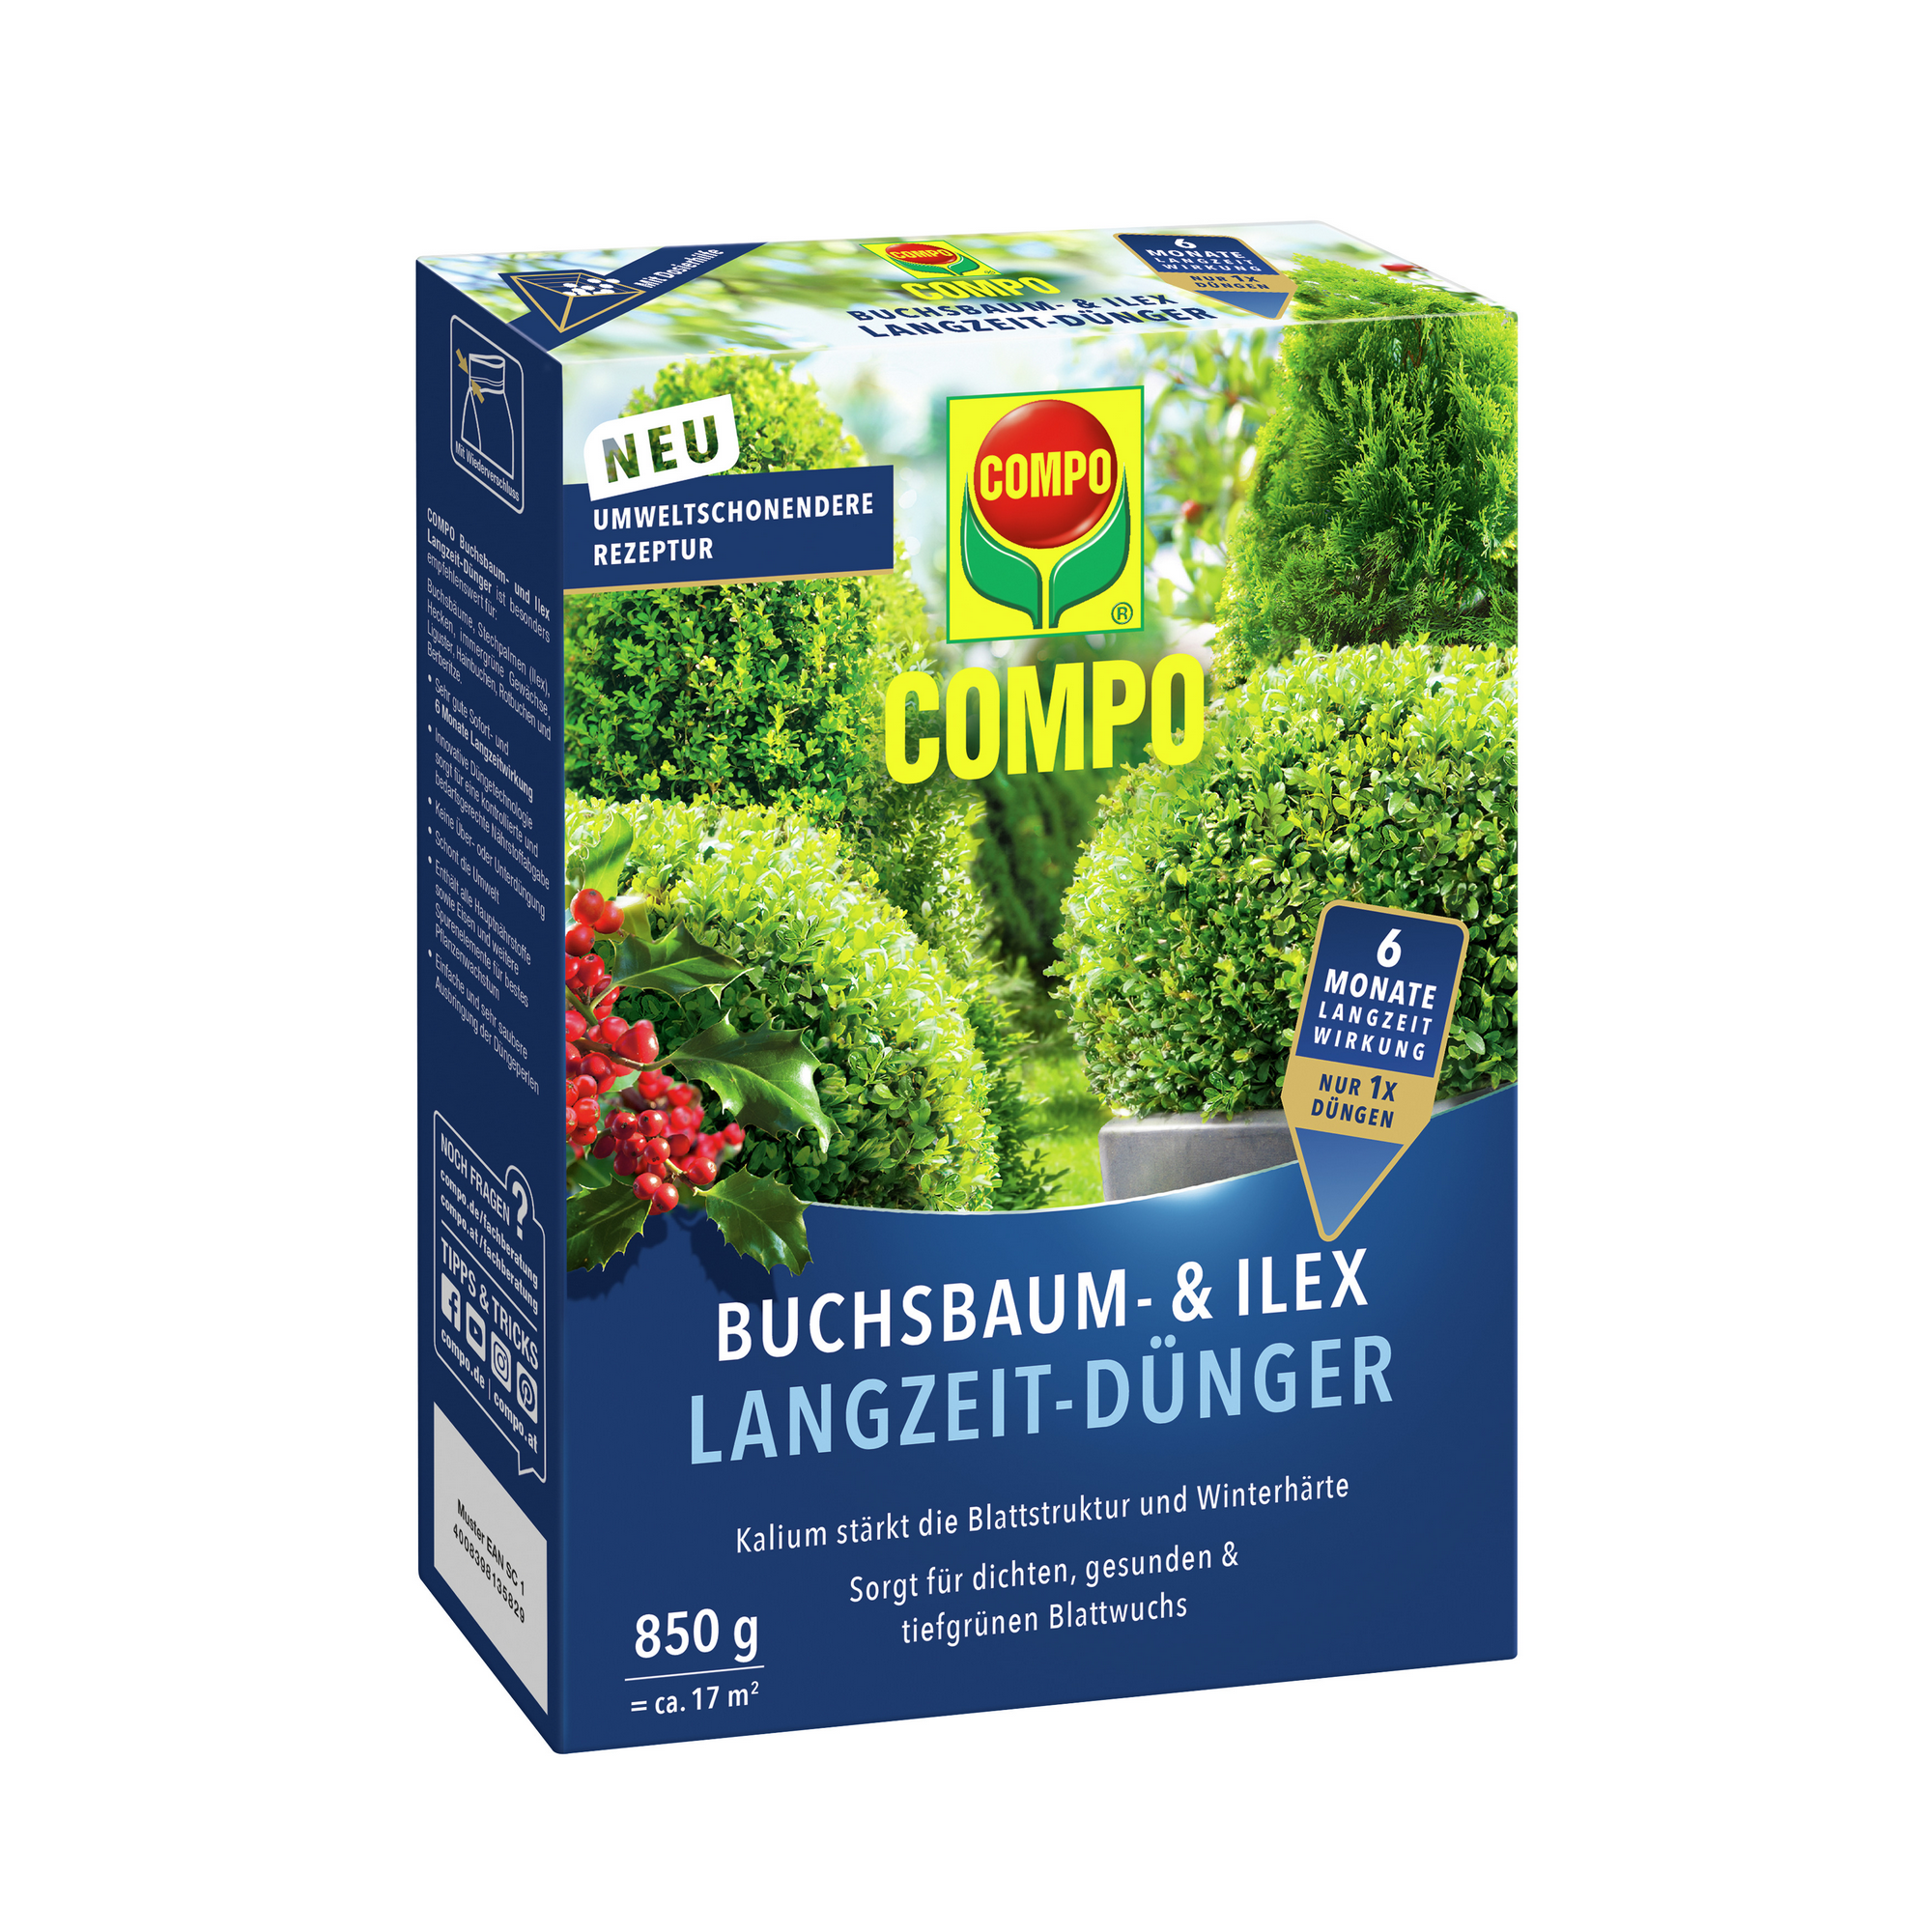 Buchsbaum- und Ilex-Langzeitdünger 850 g + product picture